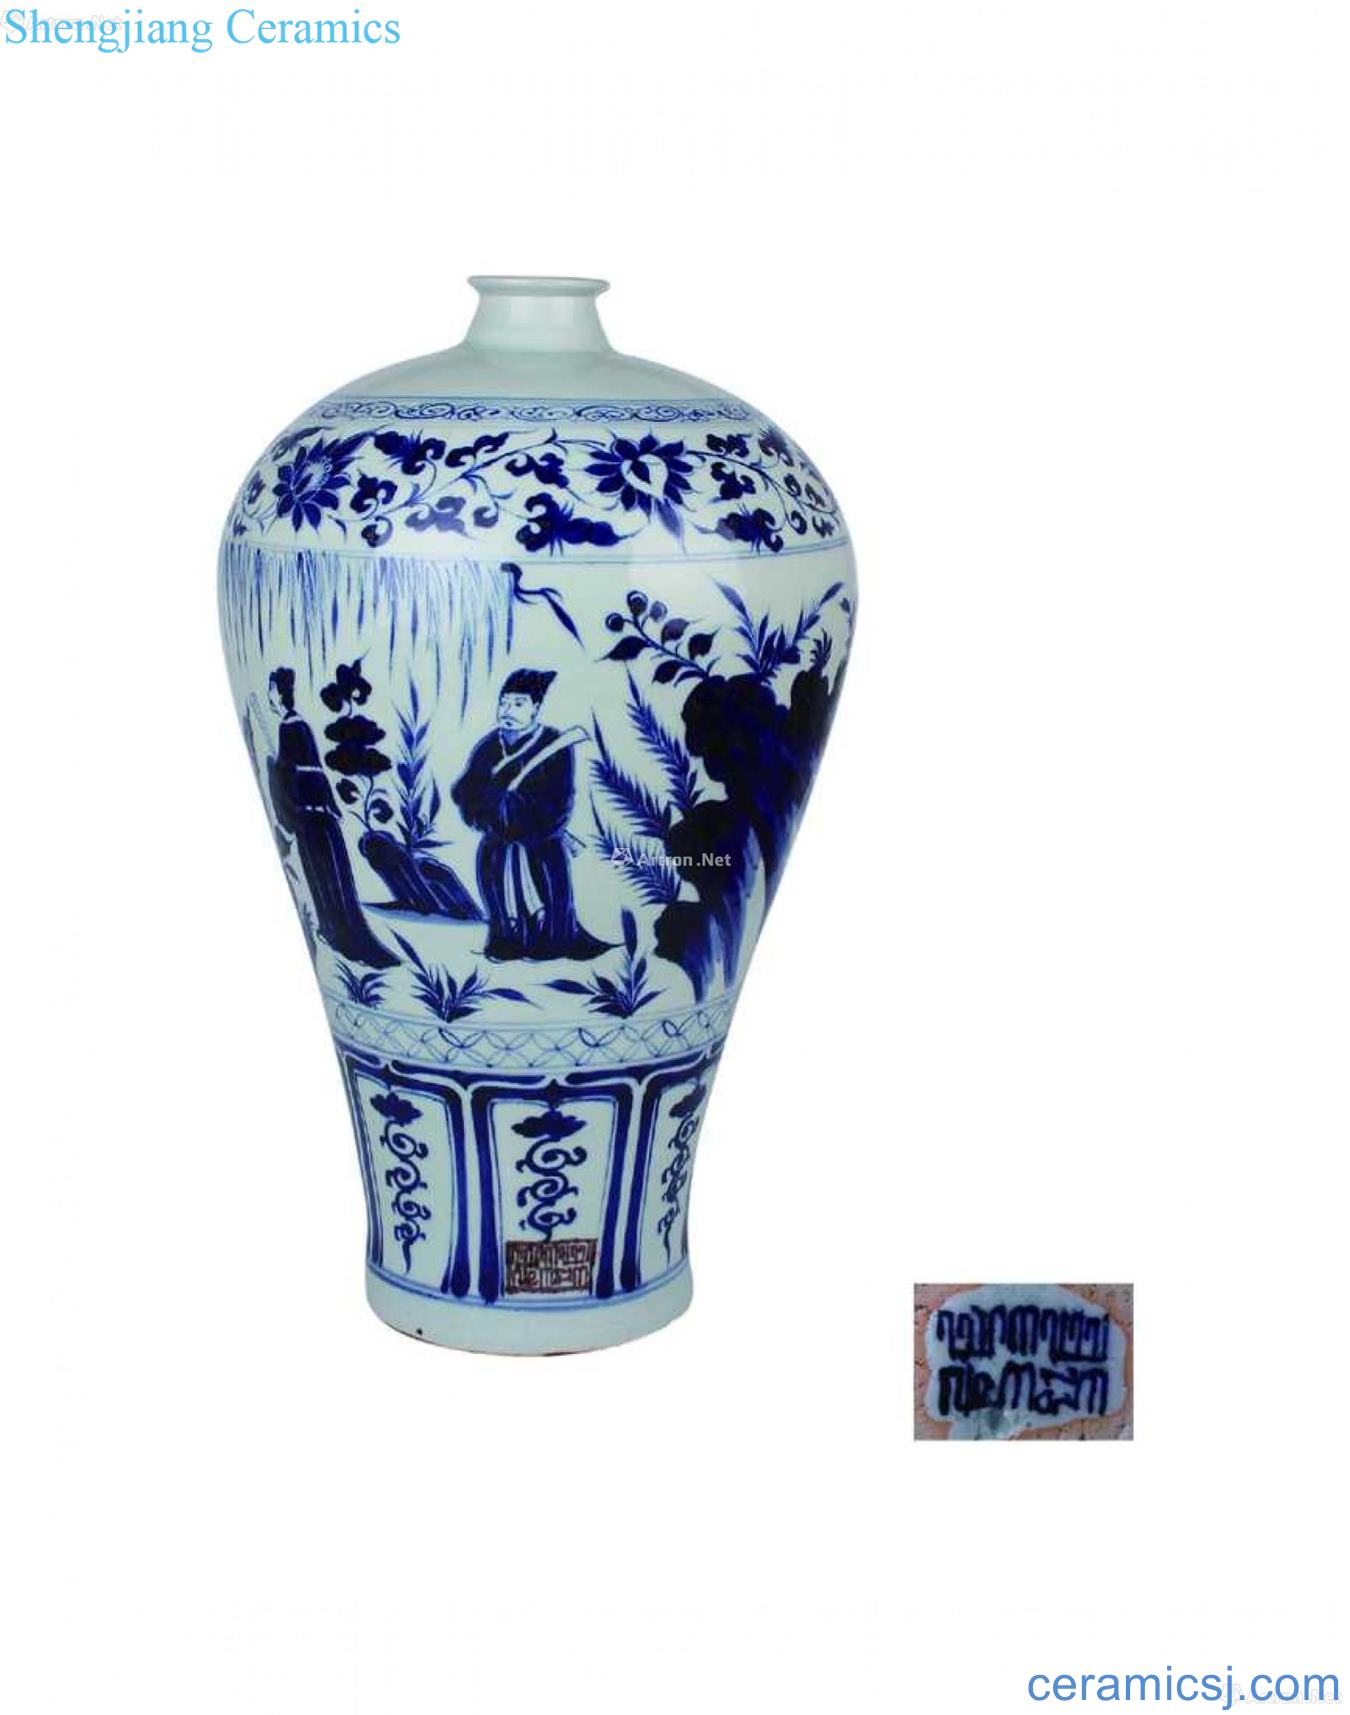 Blue and white Wen Wangfang xian mei bottle